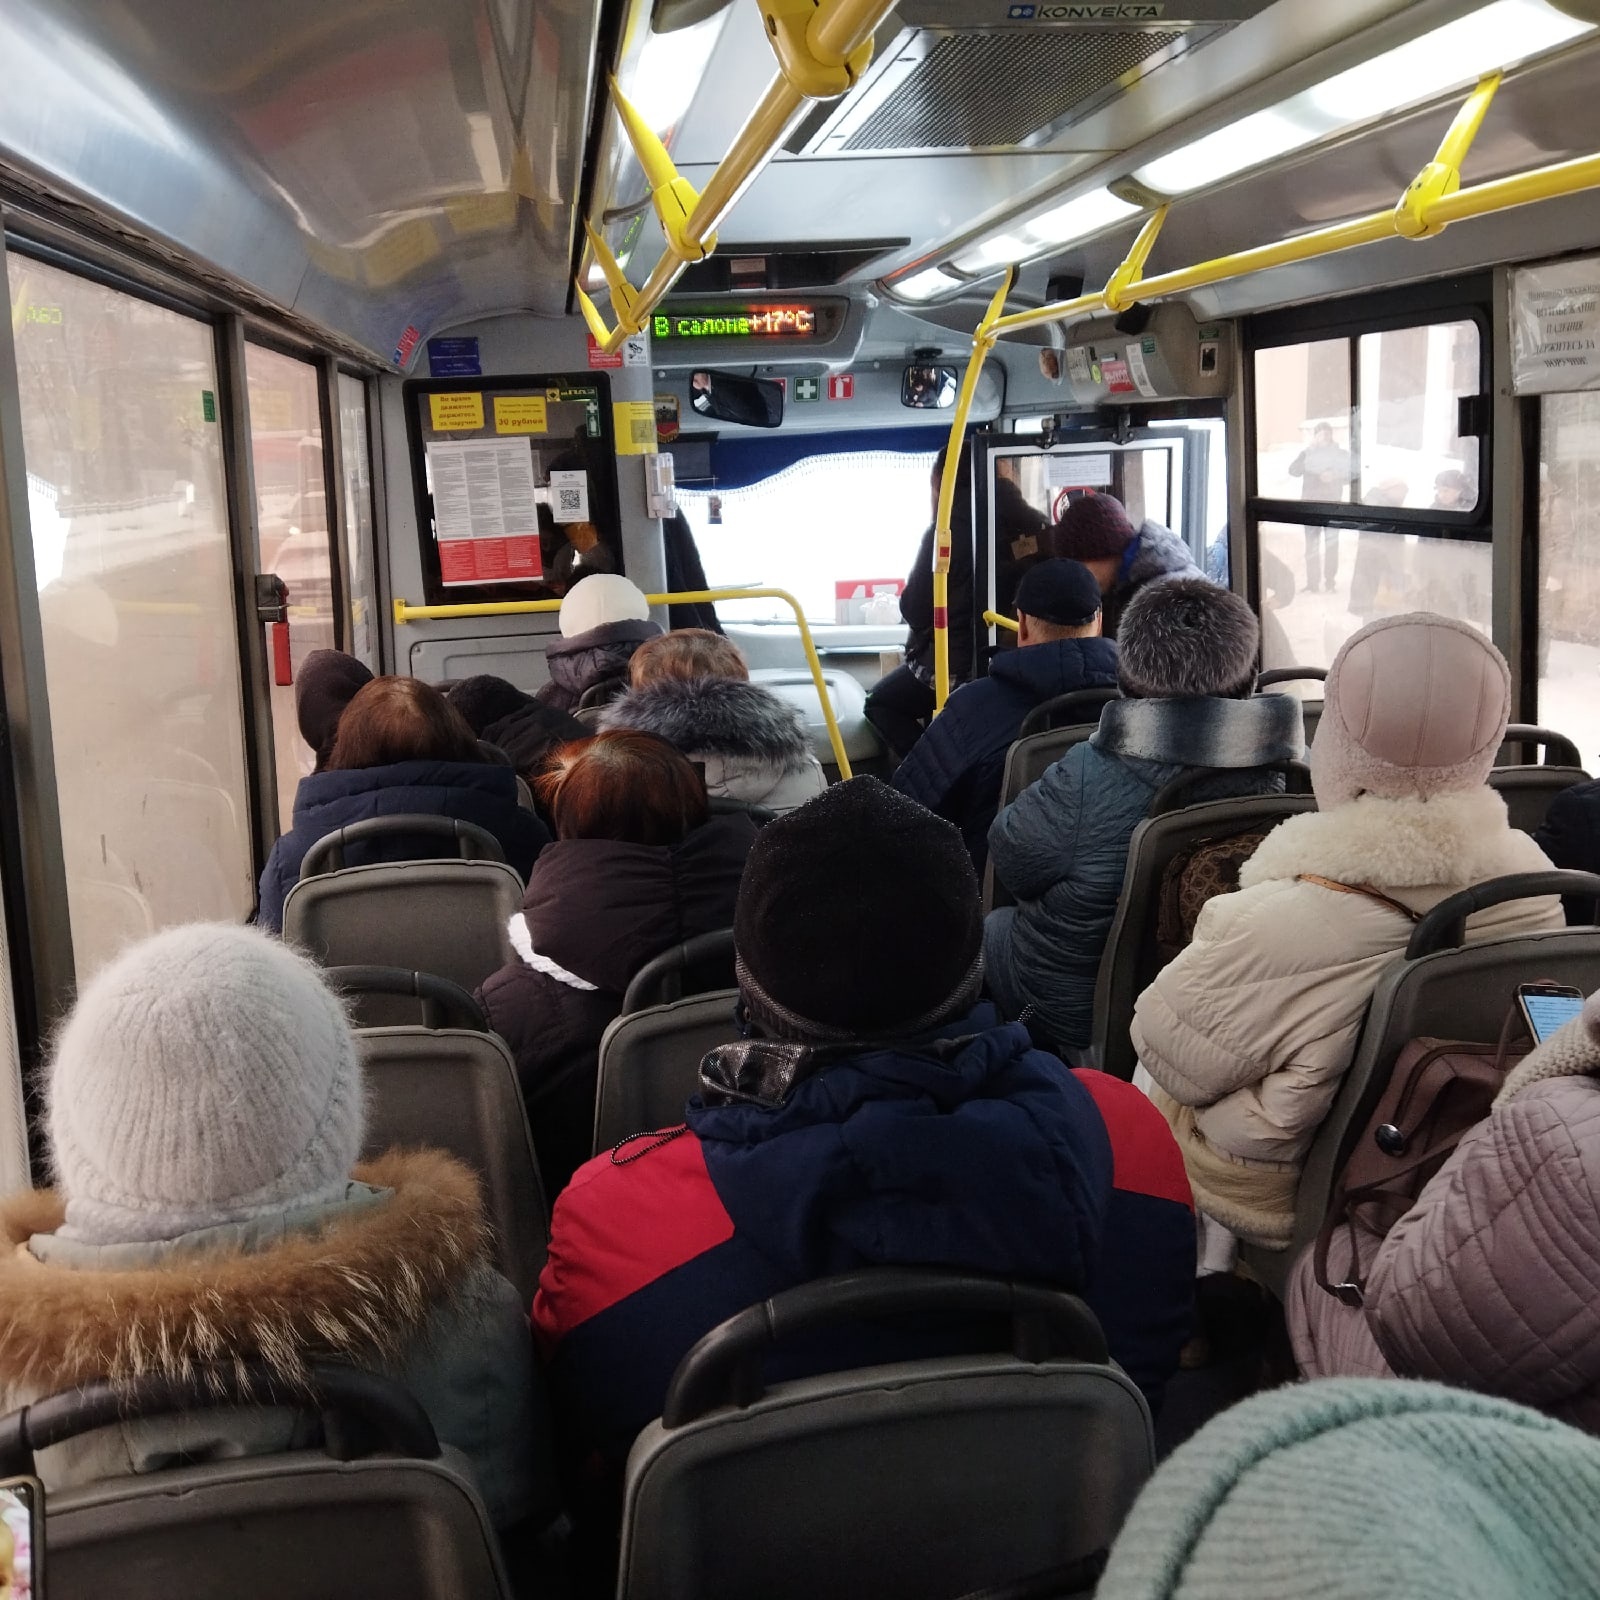 Автобусное происшествие: в Кирове пенсионер ограбил кондуктора 